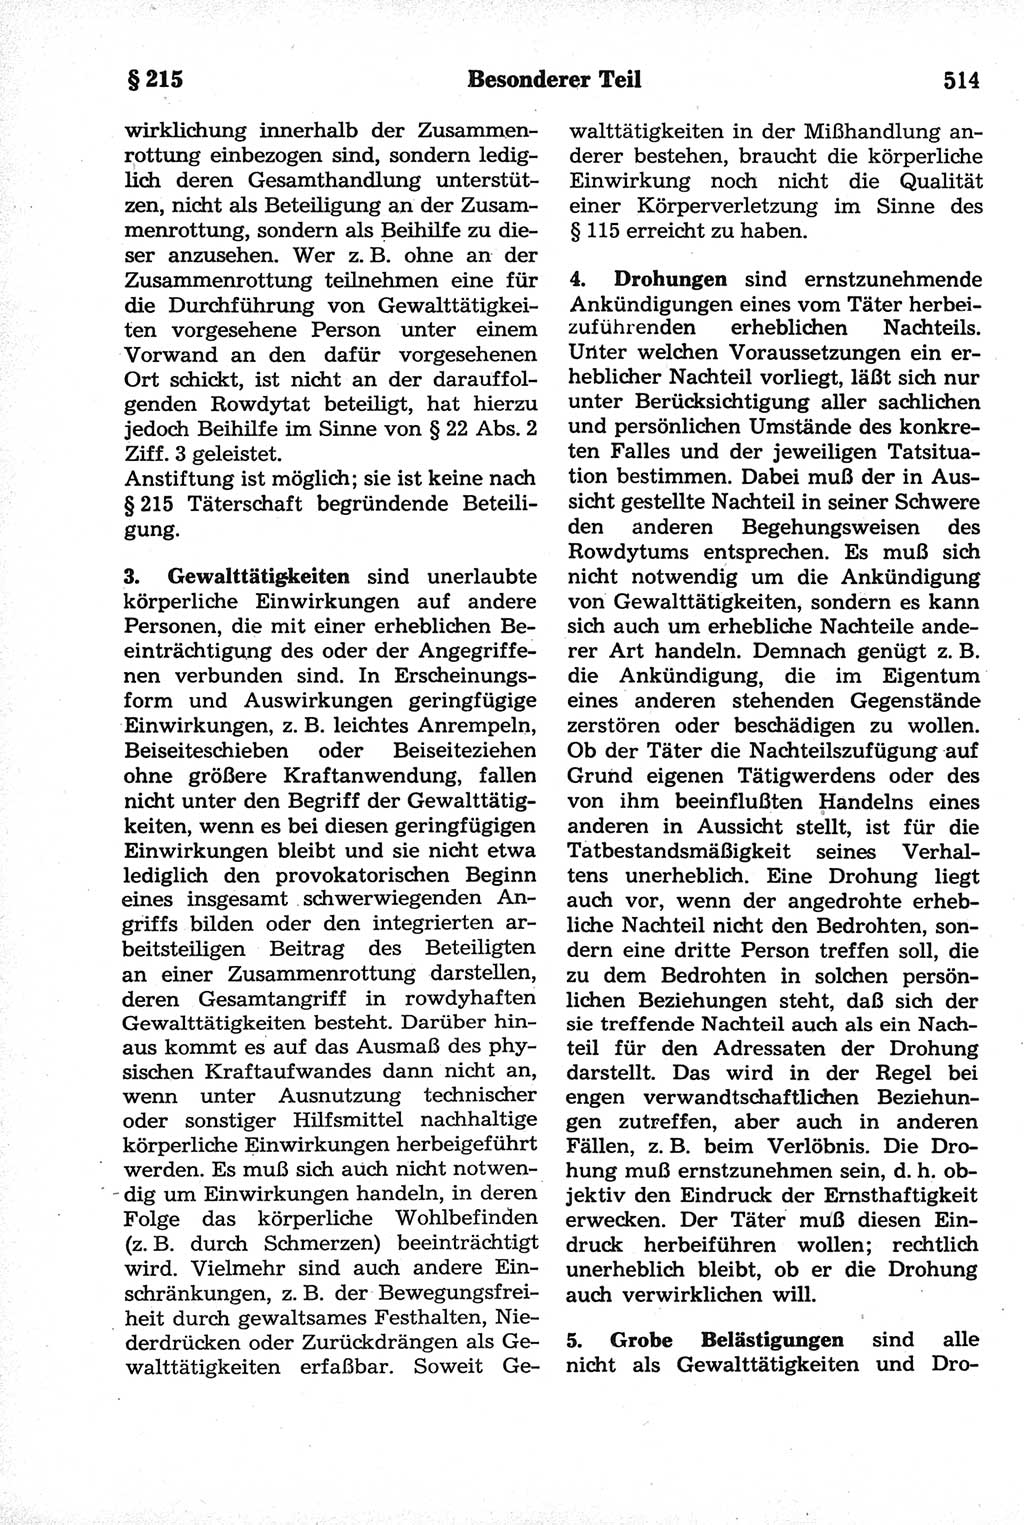 Strafrecht der Deutschen Demokratischen Republik (DDR), Kommentar zum Strafgesetzbuch (StGB) 1981, Seite 514 (Strafr. DDR Komm. StGB 1981, S. 514)